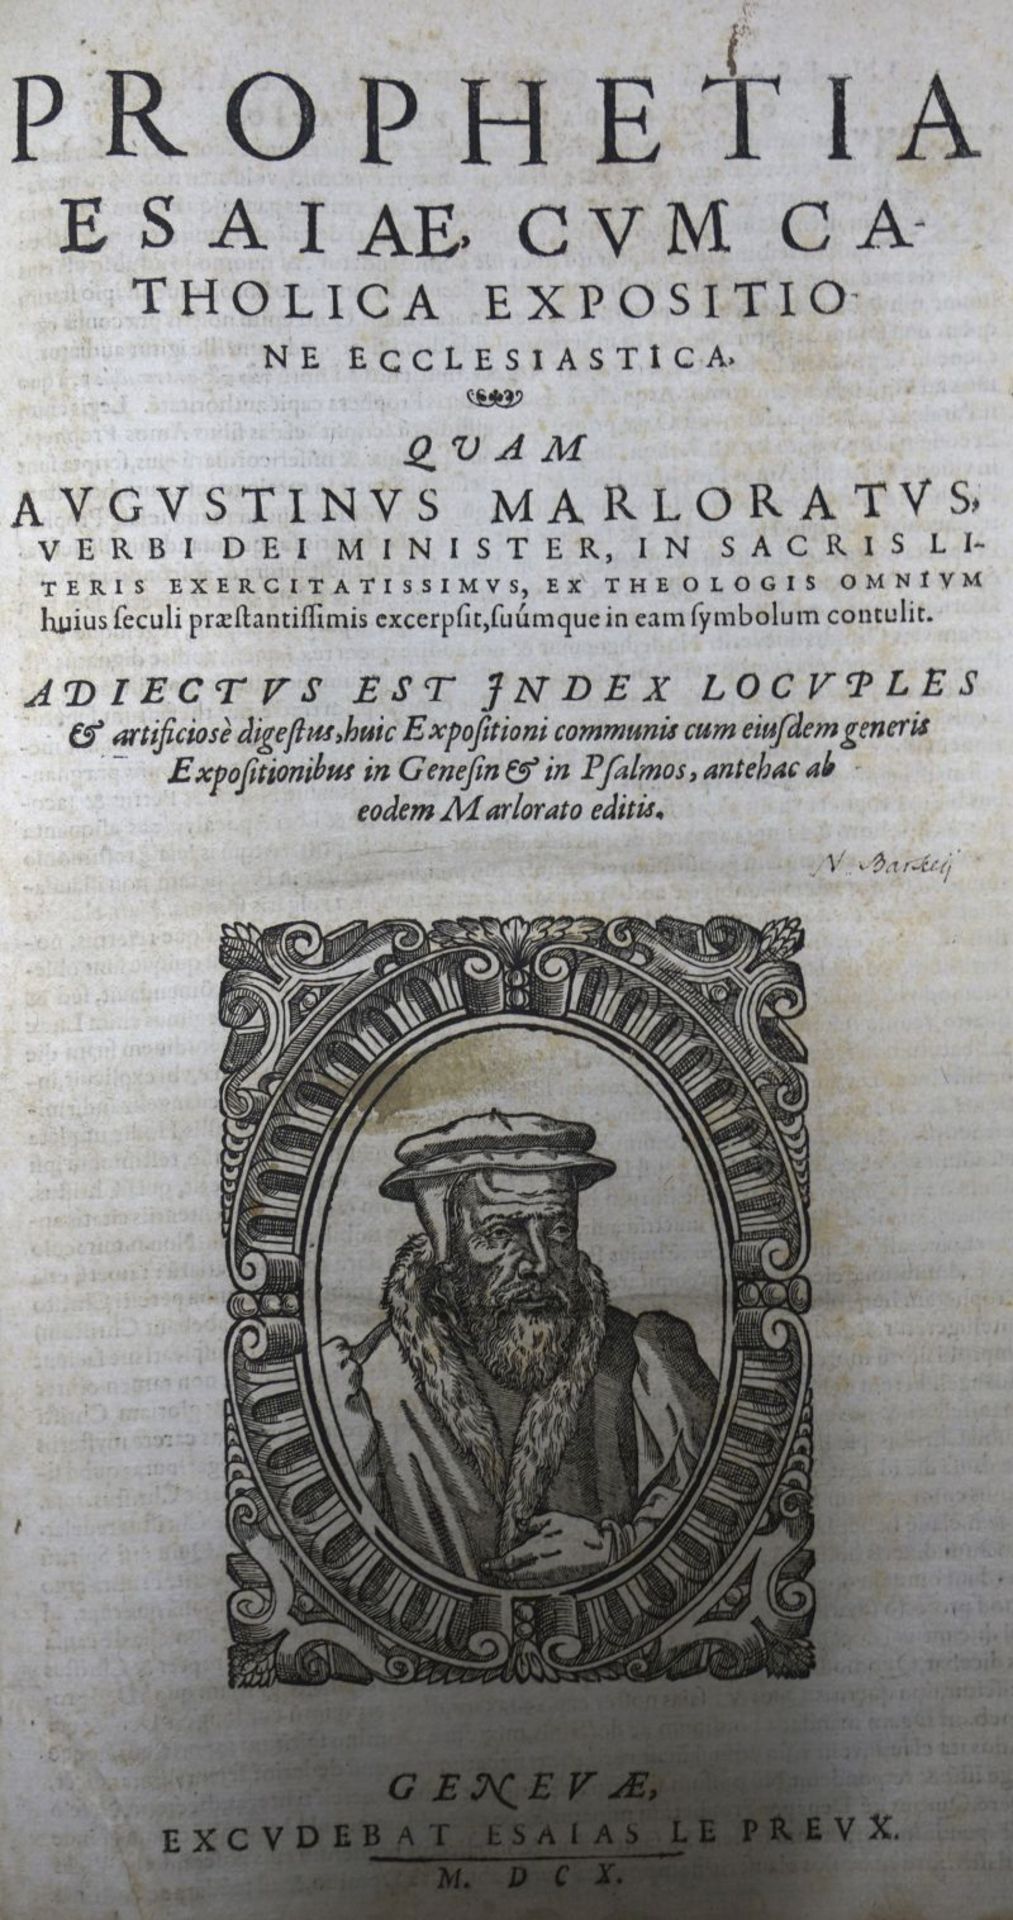 Marlorat, Augustin: Prophetia Esaiae cum catholica expositione ecclesiastica